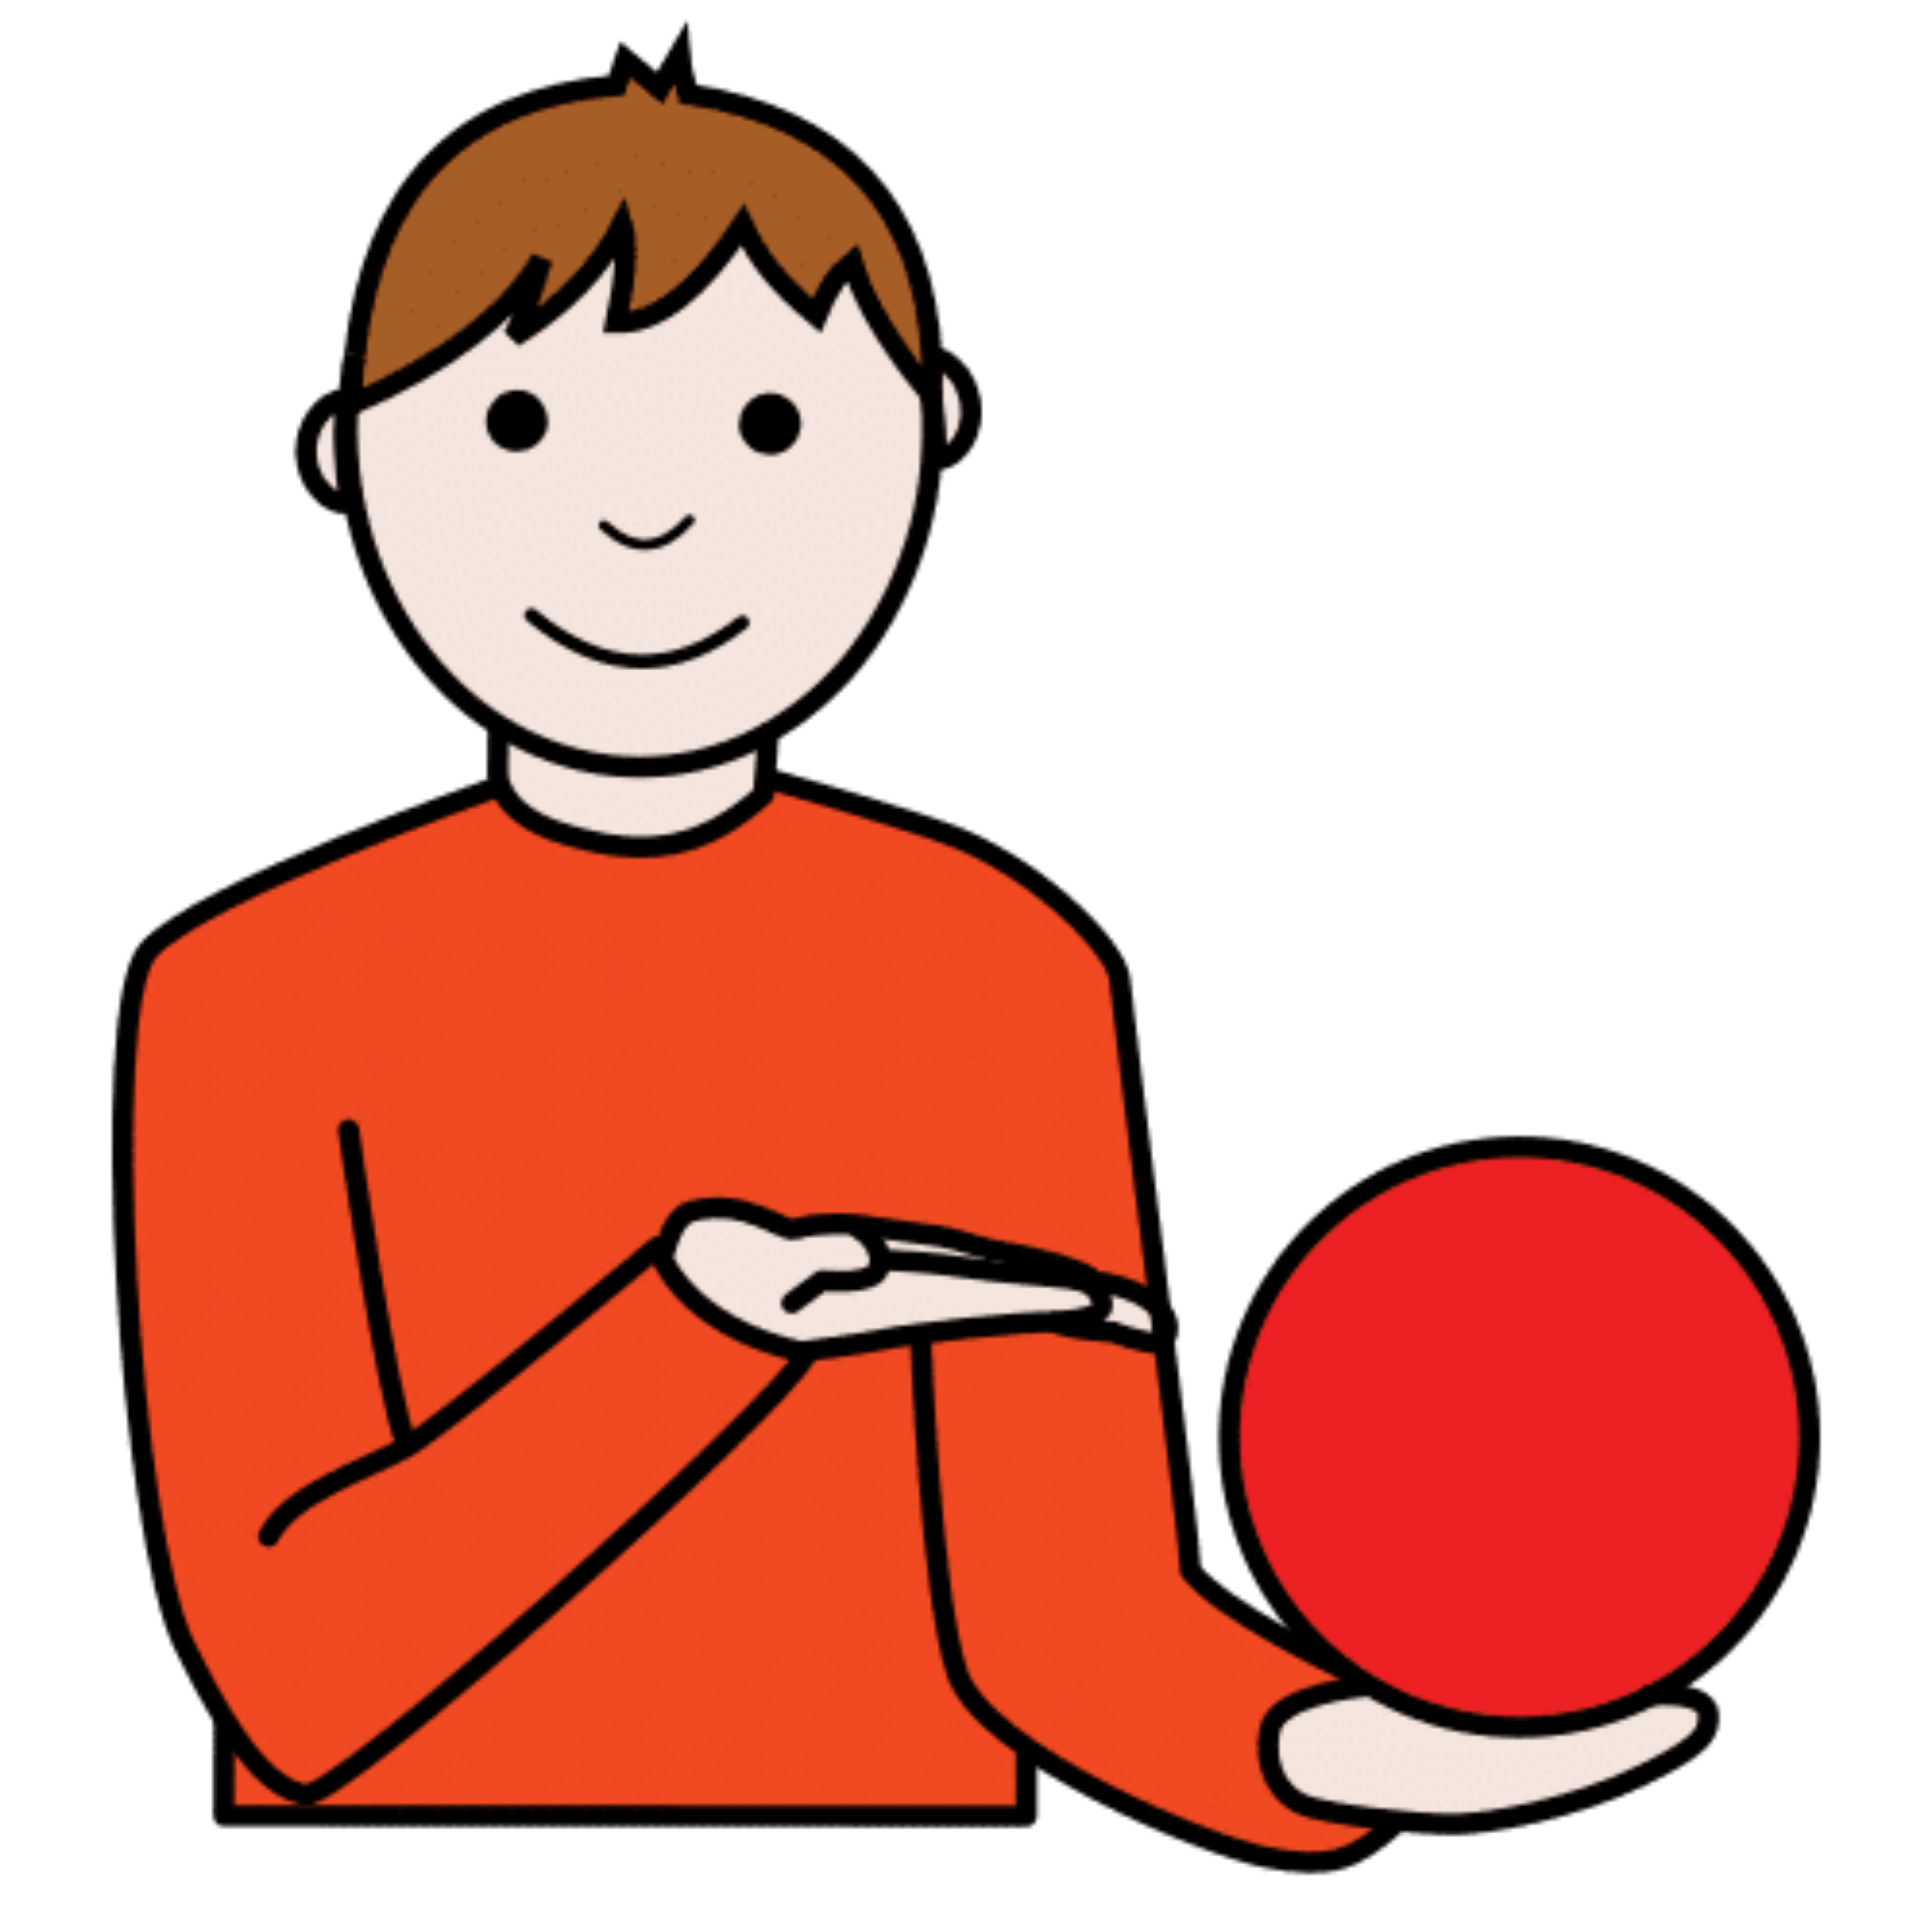 La imagen muestra a una chico enseñando una pelota.